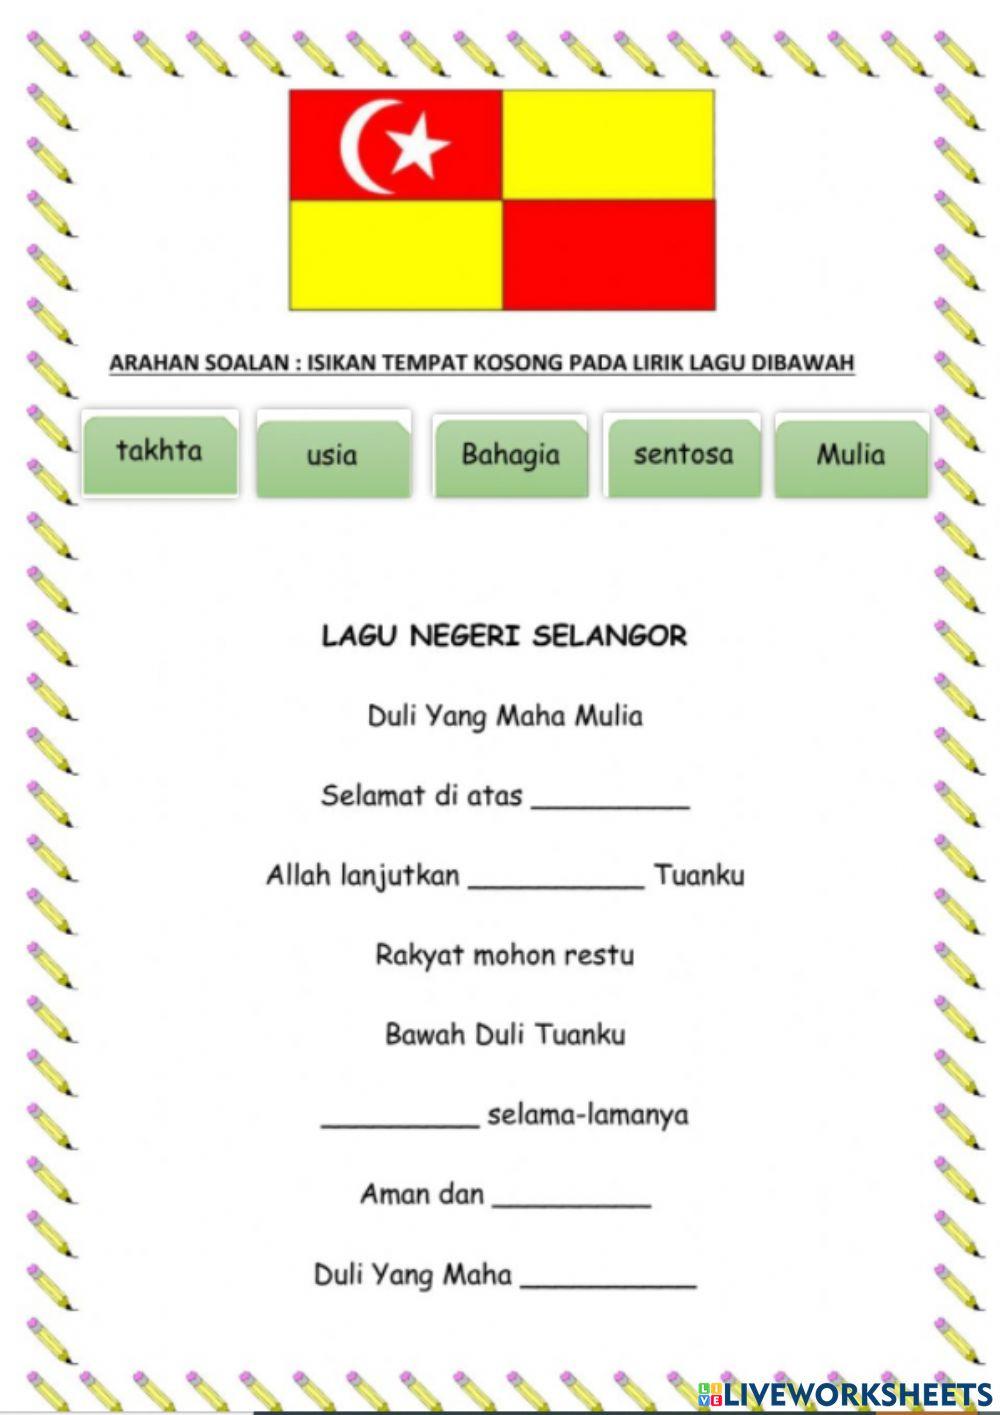 Lagu Negeri Selangor